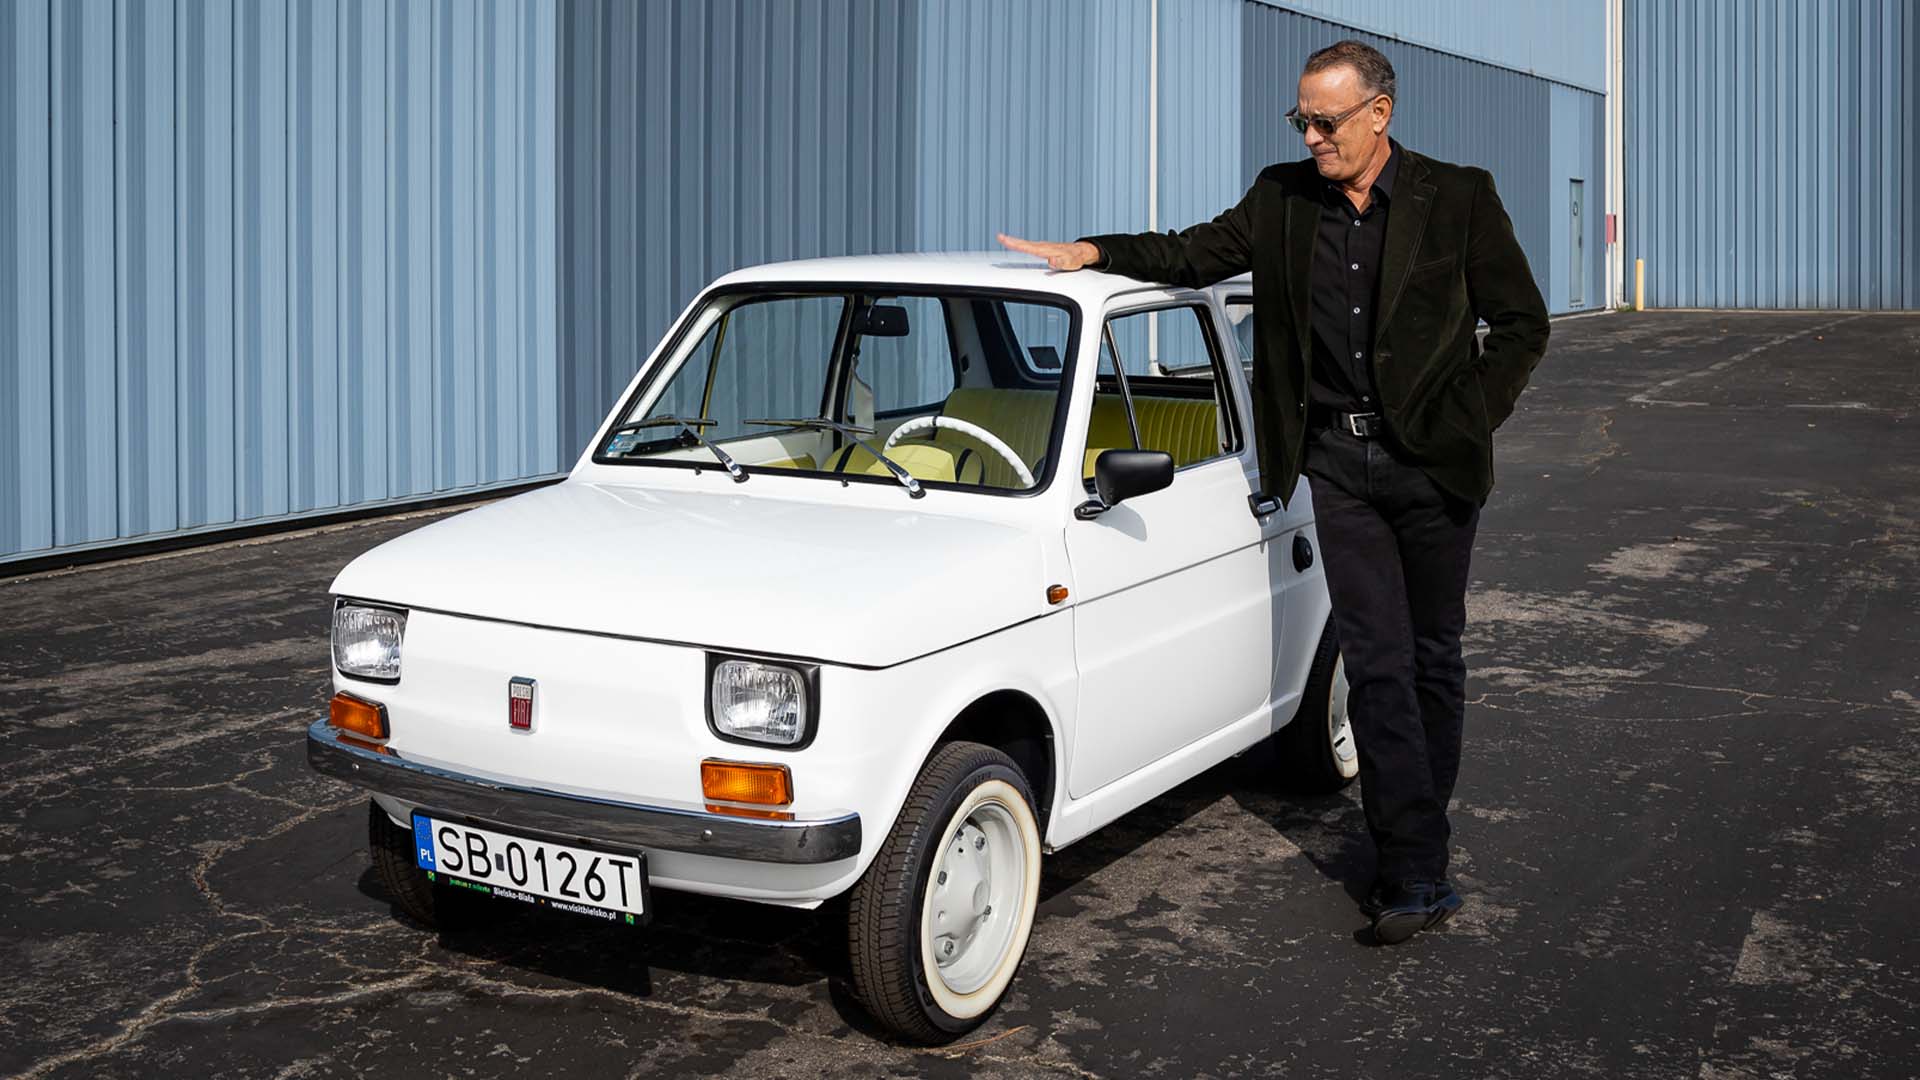 1974 Fiat przedstawia polskie miasto Tomowi Hanksowi.  Teraz rejestruje go na cele charytatywne